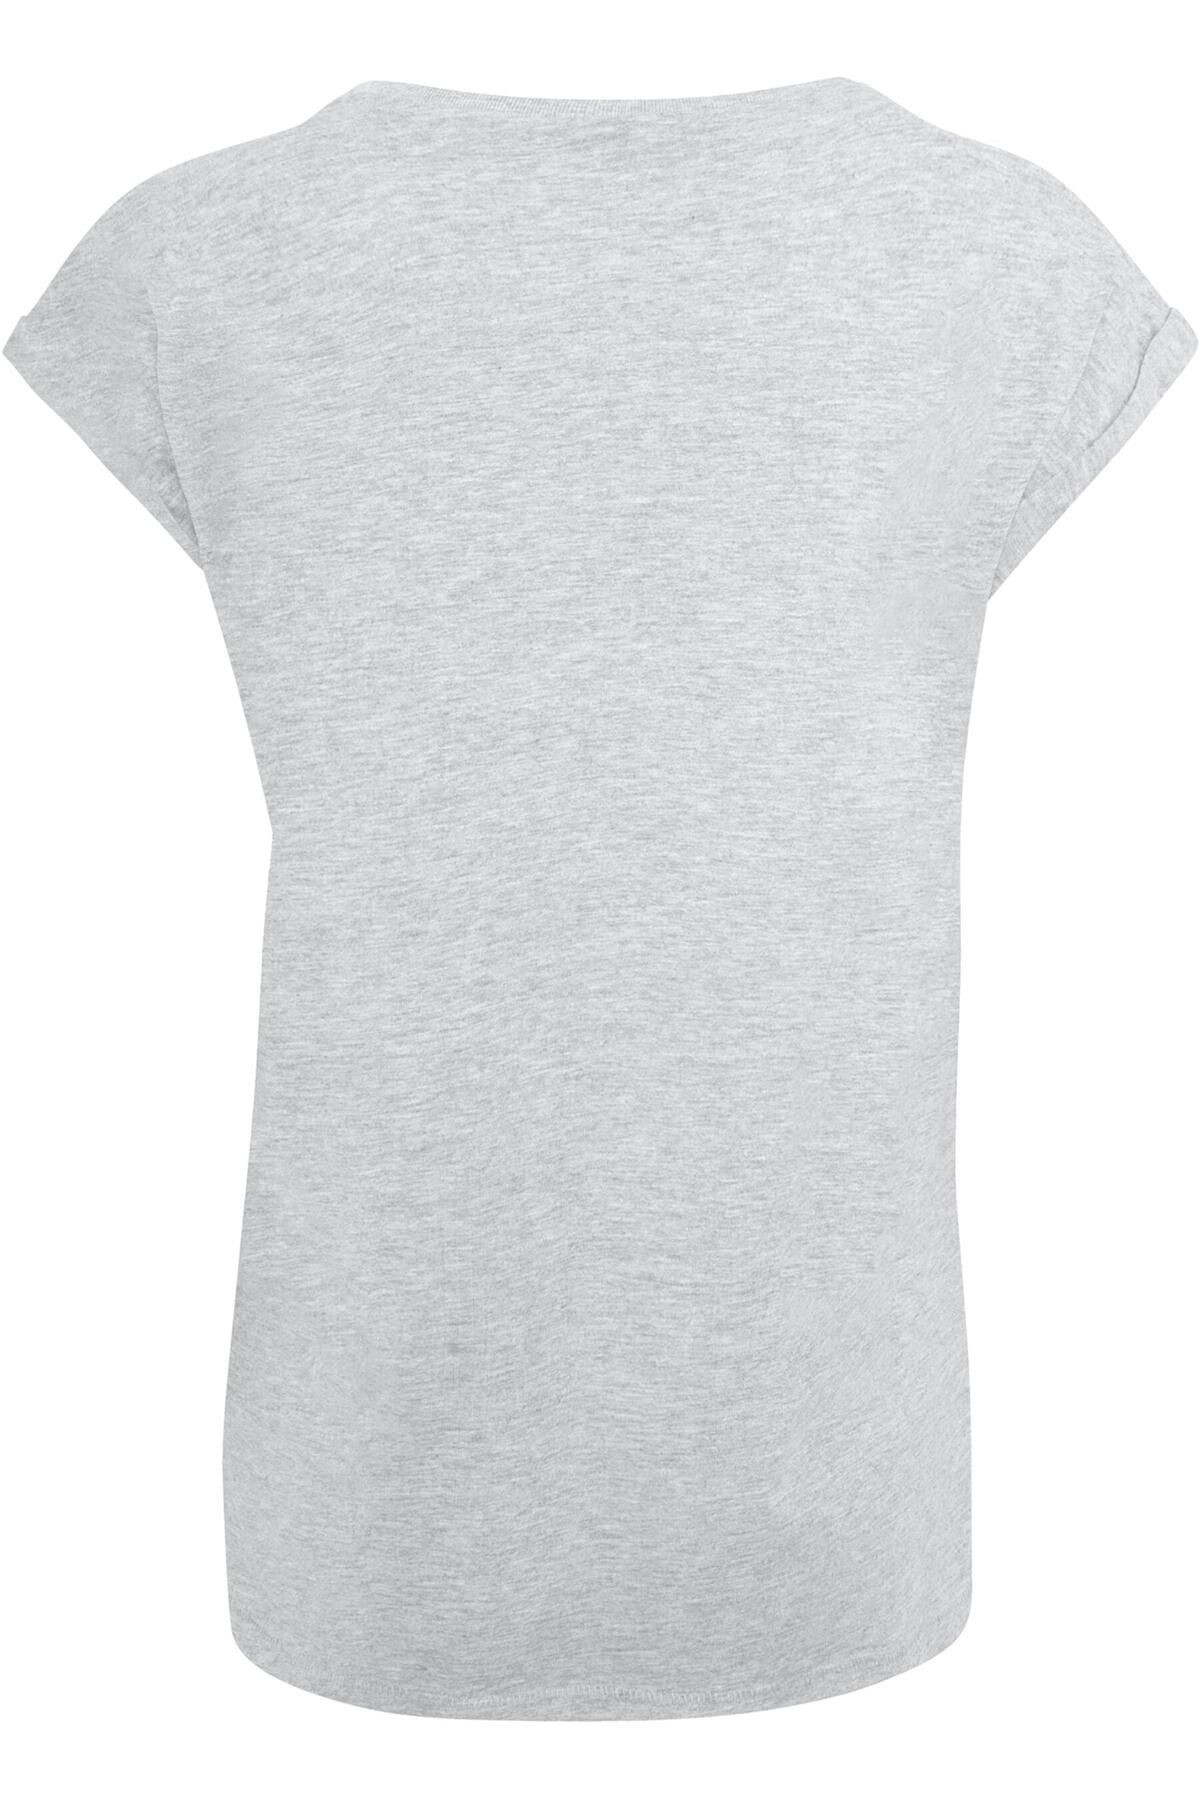 Merchcode Damen Ladies Schulterpartie - Never verlängerter Trendyol Up mit Give T-Shirt